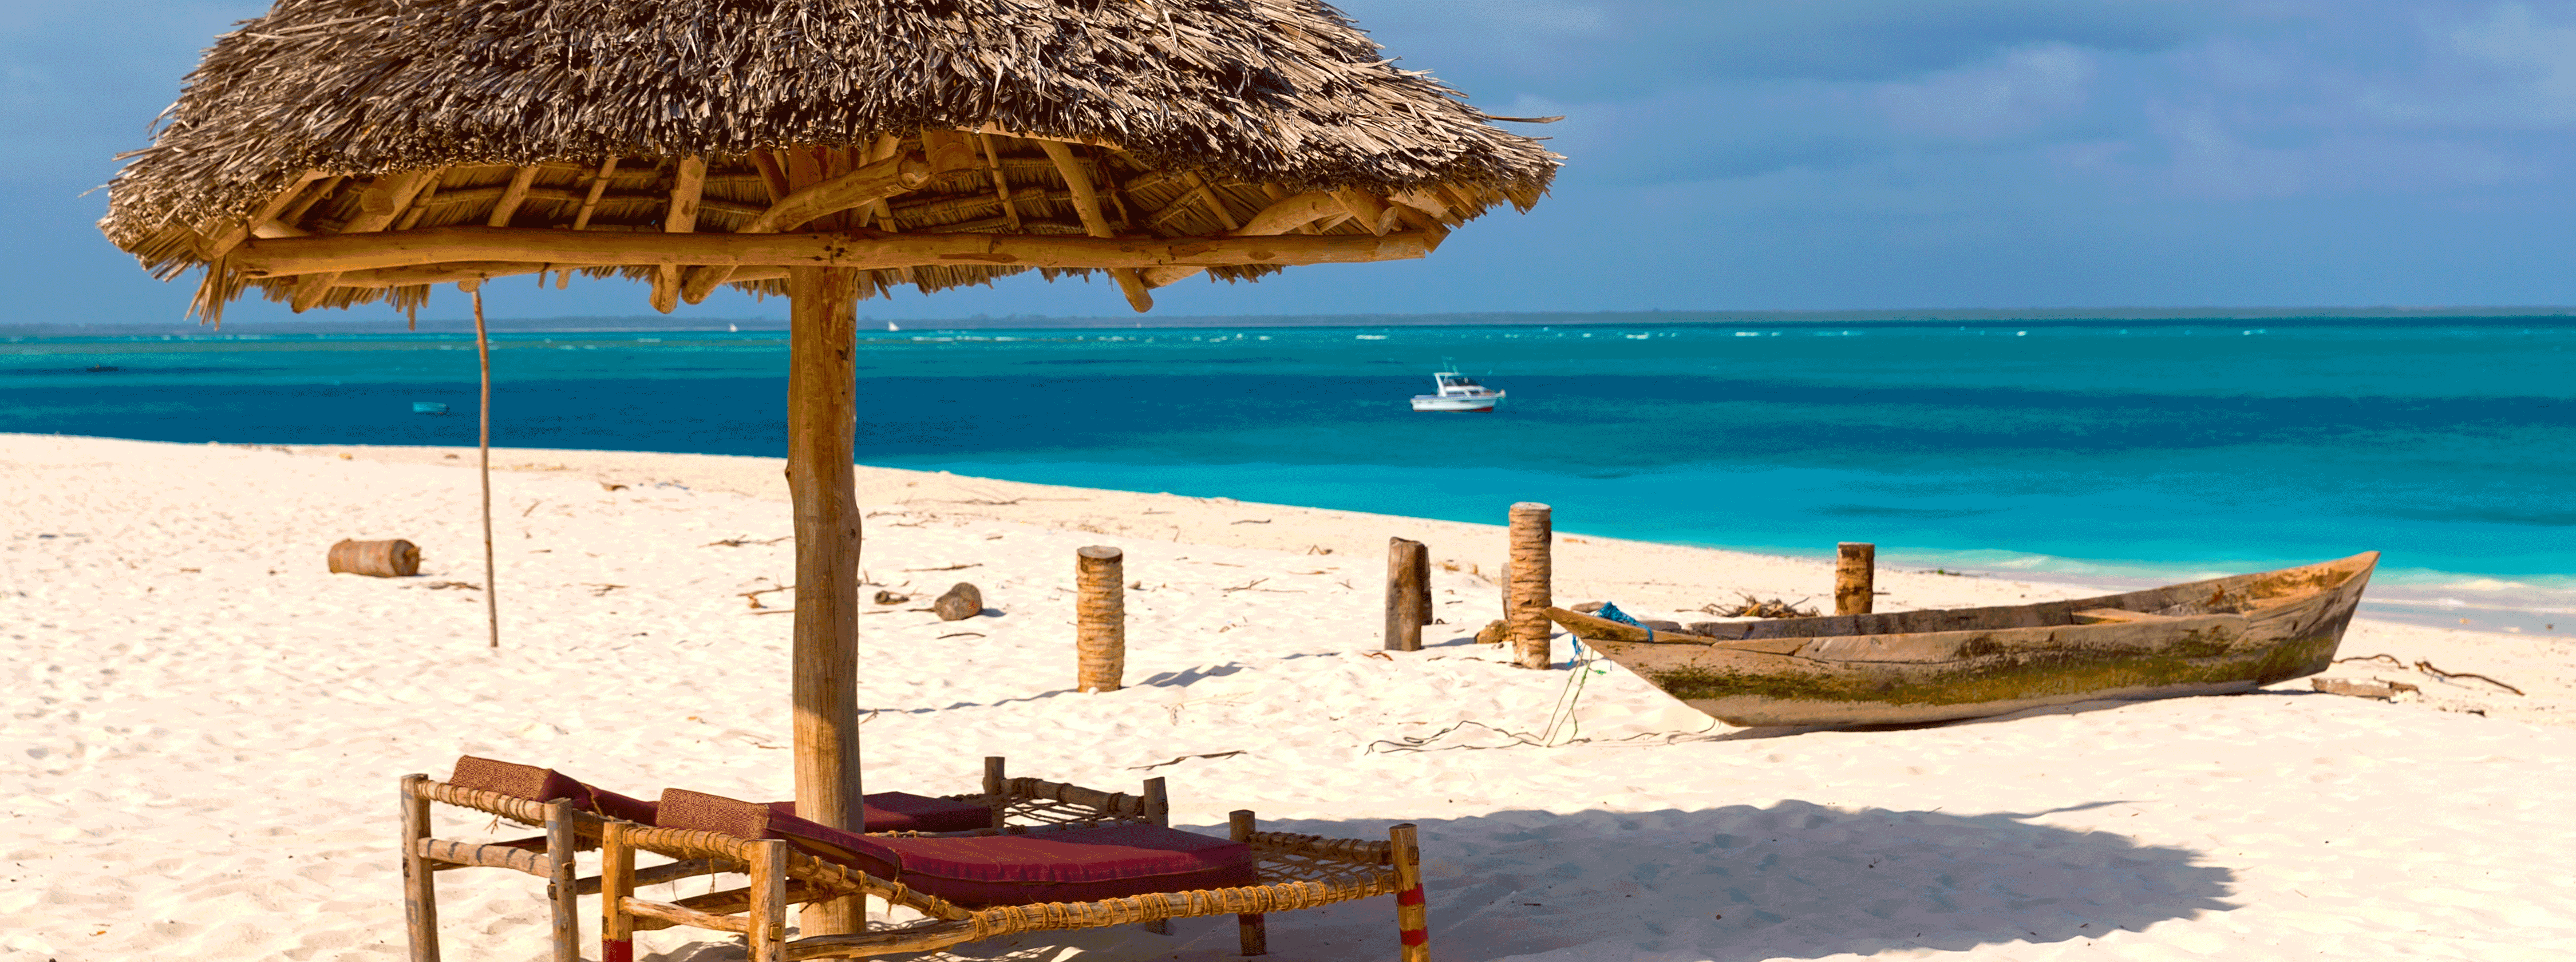 /resource/Images/africa/tanzania/headerimage/Umbrella-and-lounges-Kendwa-beach-Zanzibar-Tanzania.png